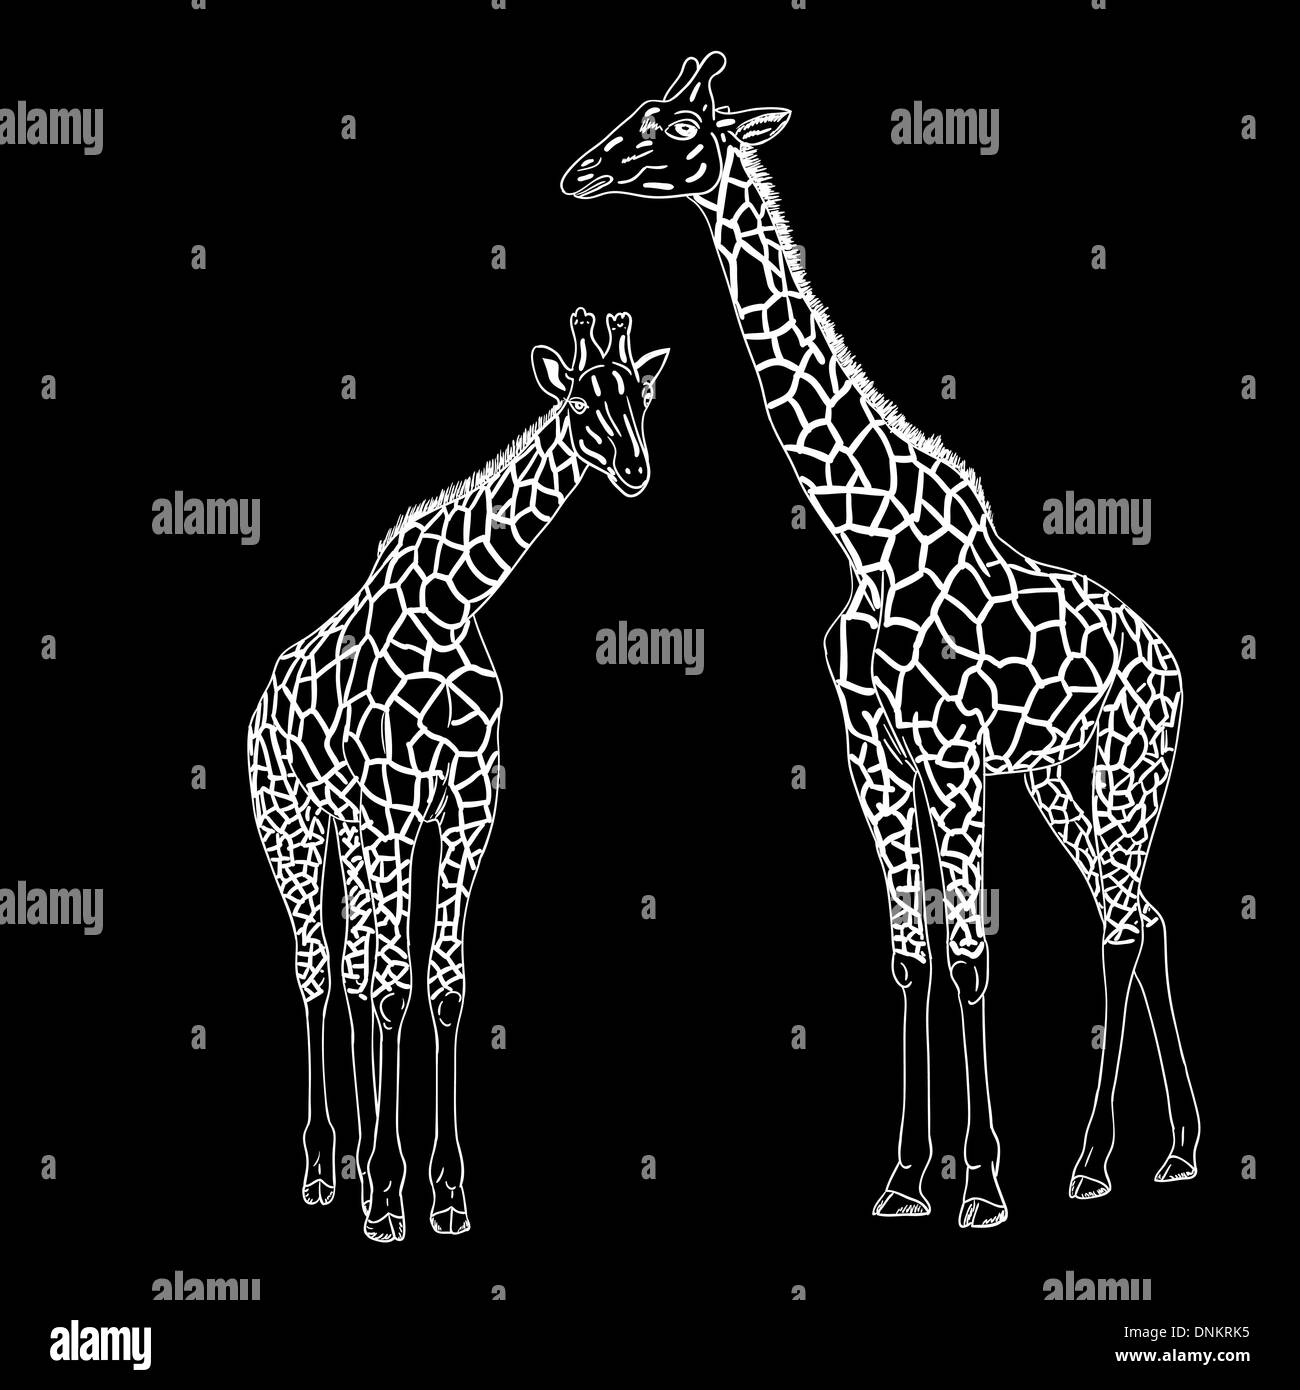 Zwei Giraffen. Vektor-Illustration. Stock Vektor